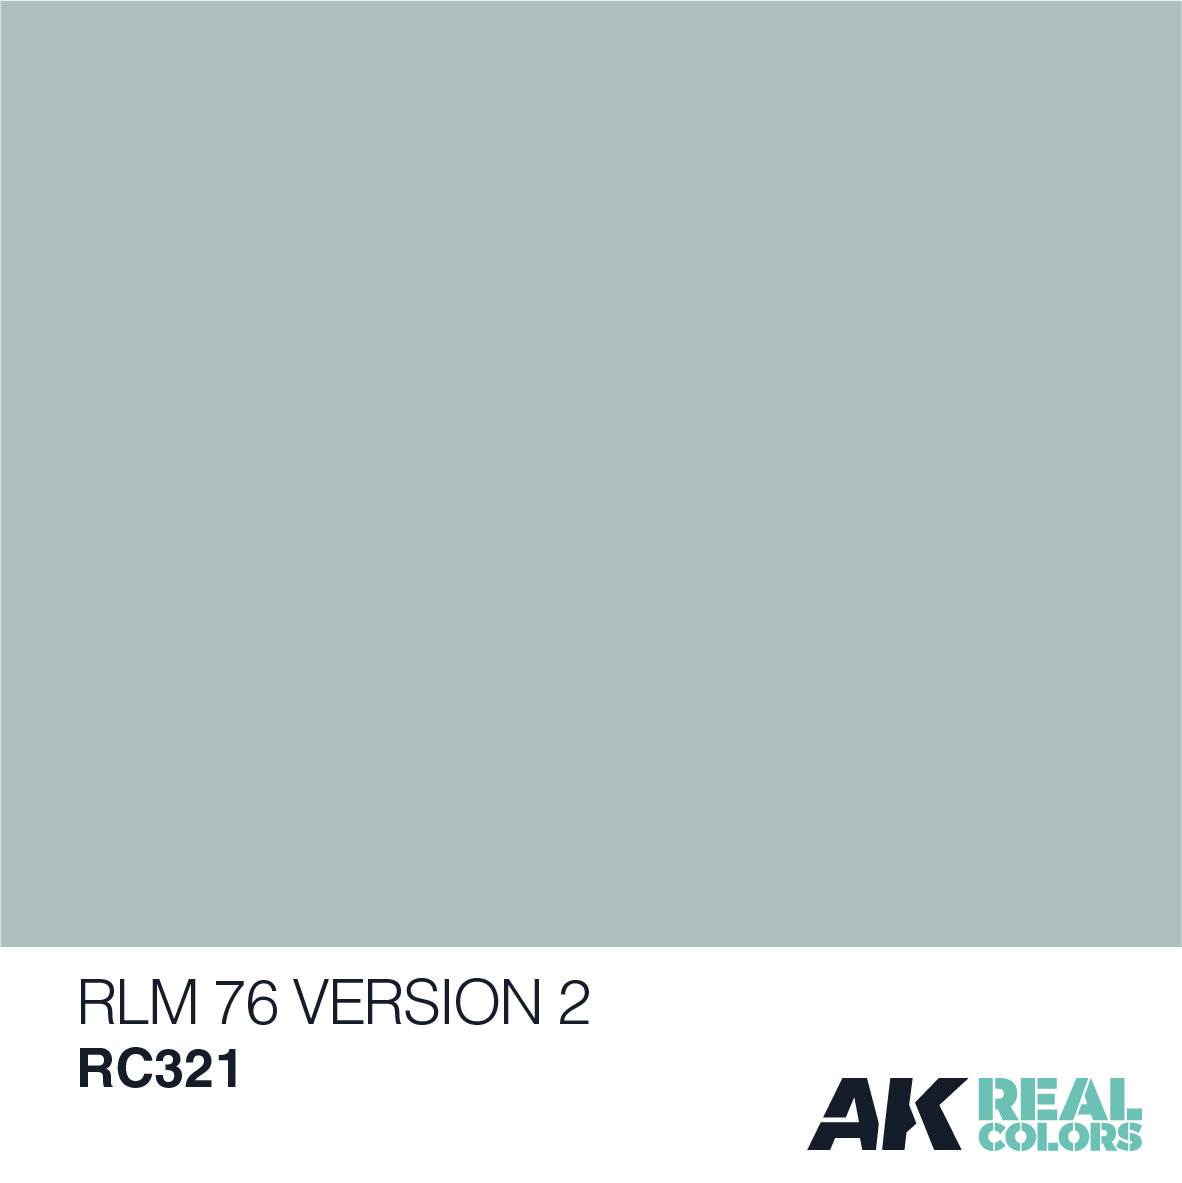 RLM 76 Version 2